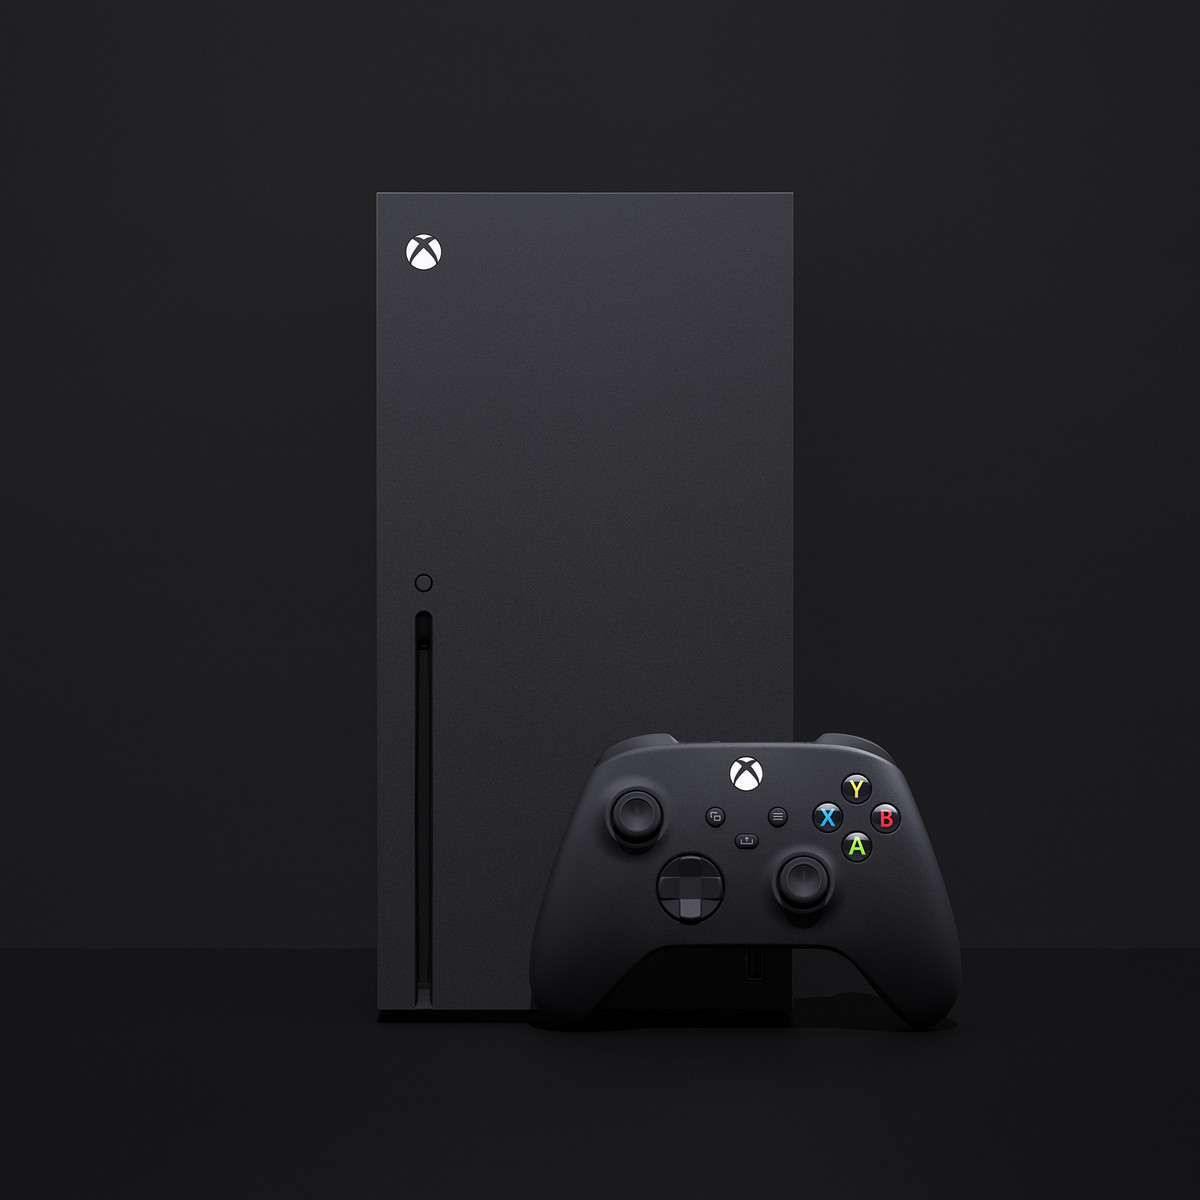 एंटोनलाइन पर Xbox सीरीज X बंडलों पर $399.99 की छूट मिल रही है